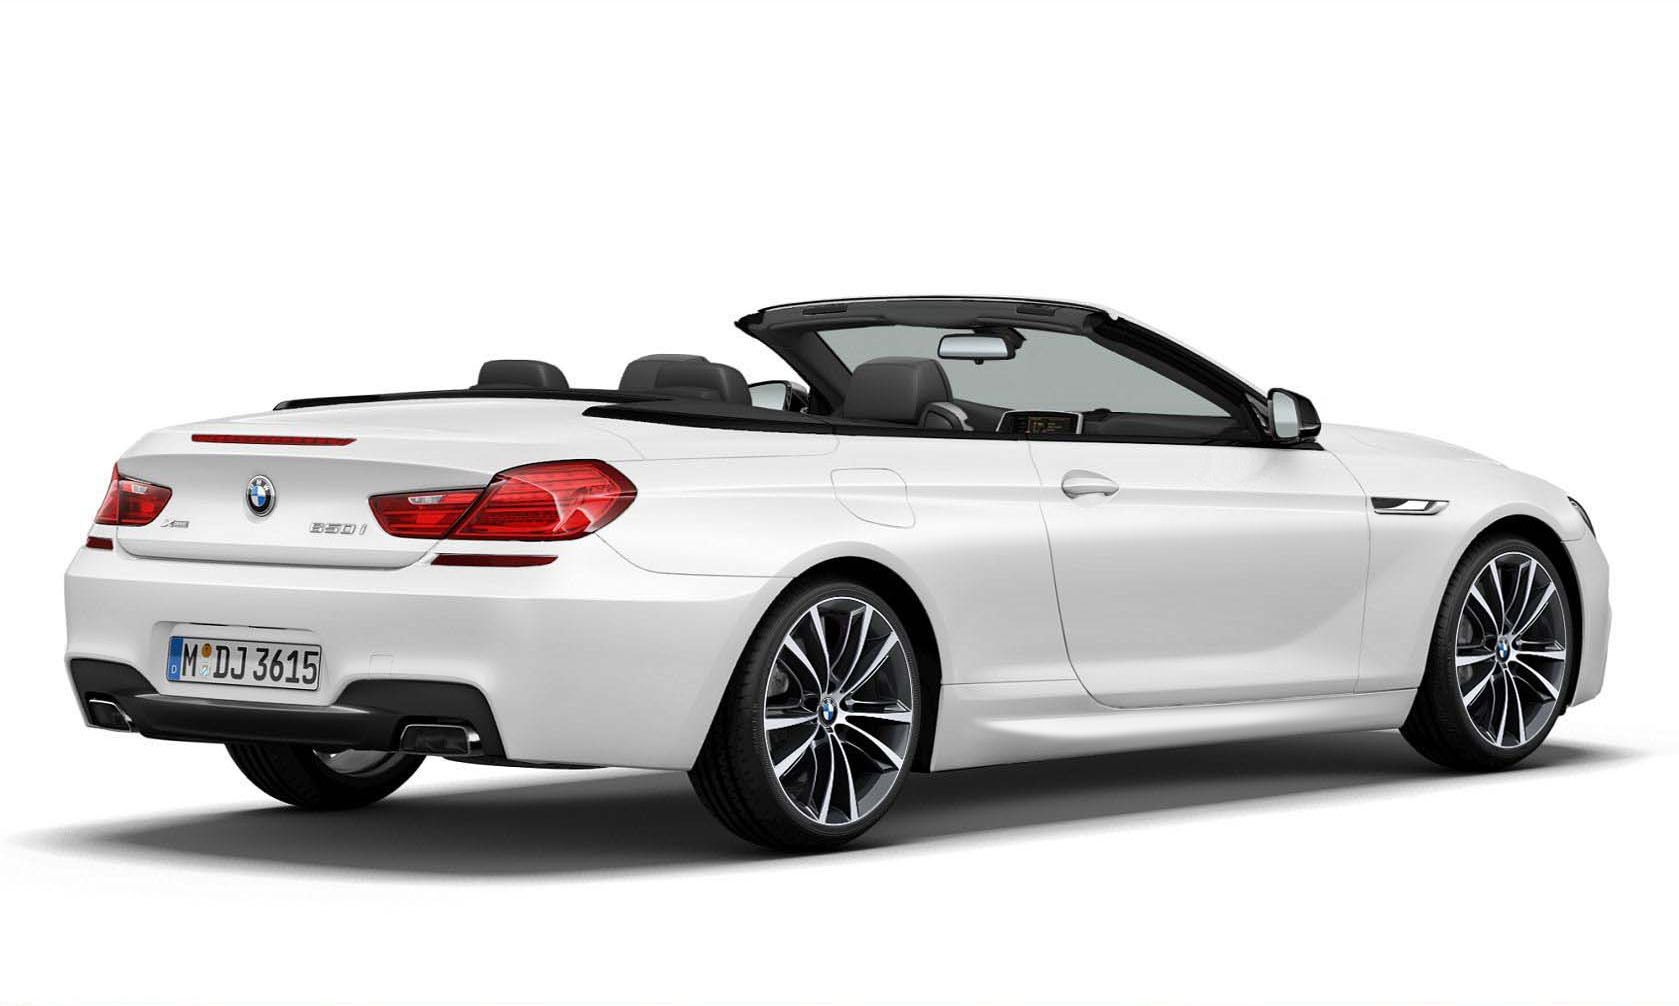 2014 BMW 650i Frozen Brilliant White Edition Convertible